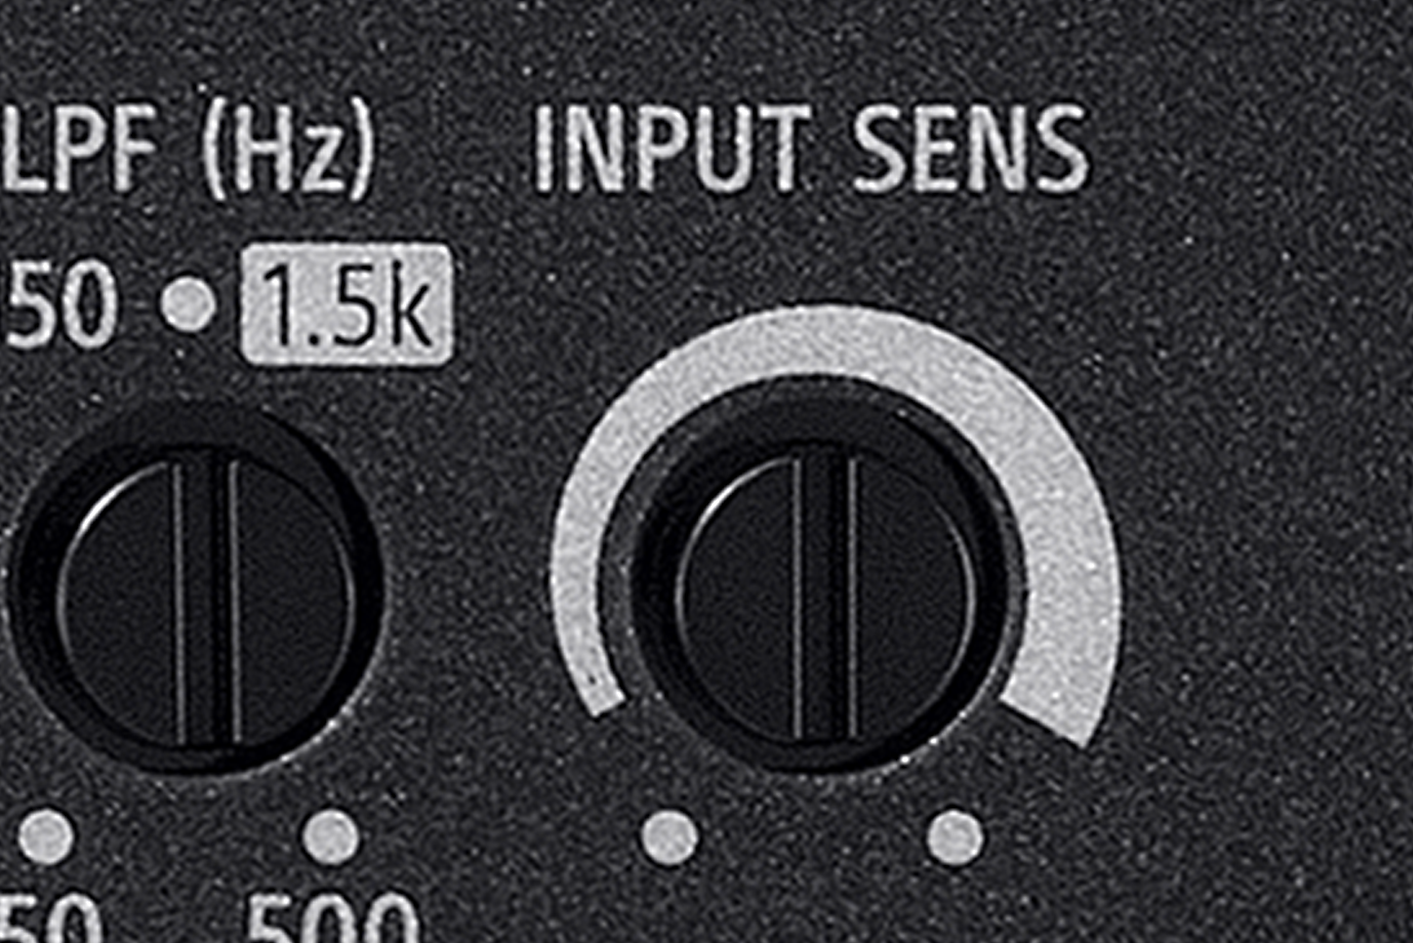 Gambar close-up LPF (Hz) dan tombol putar Input Sens